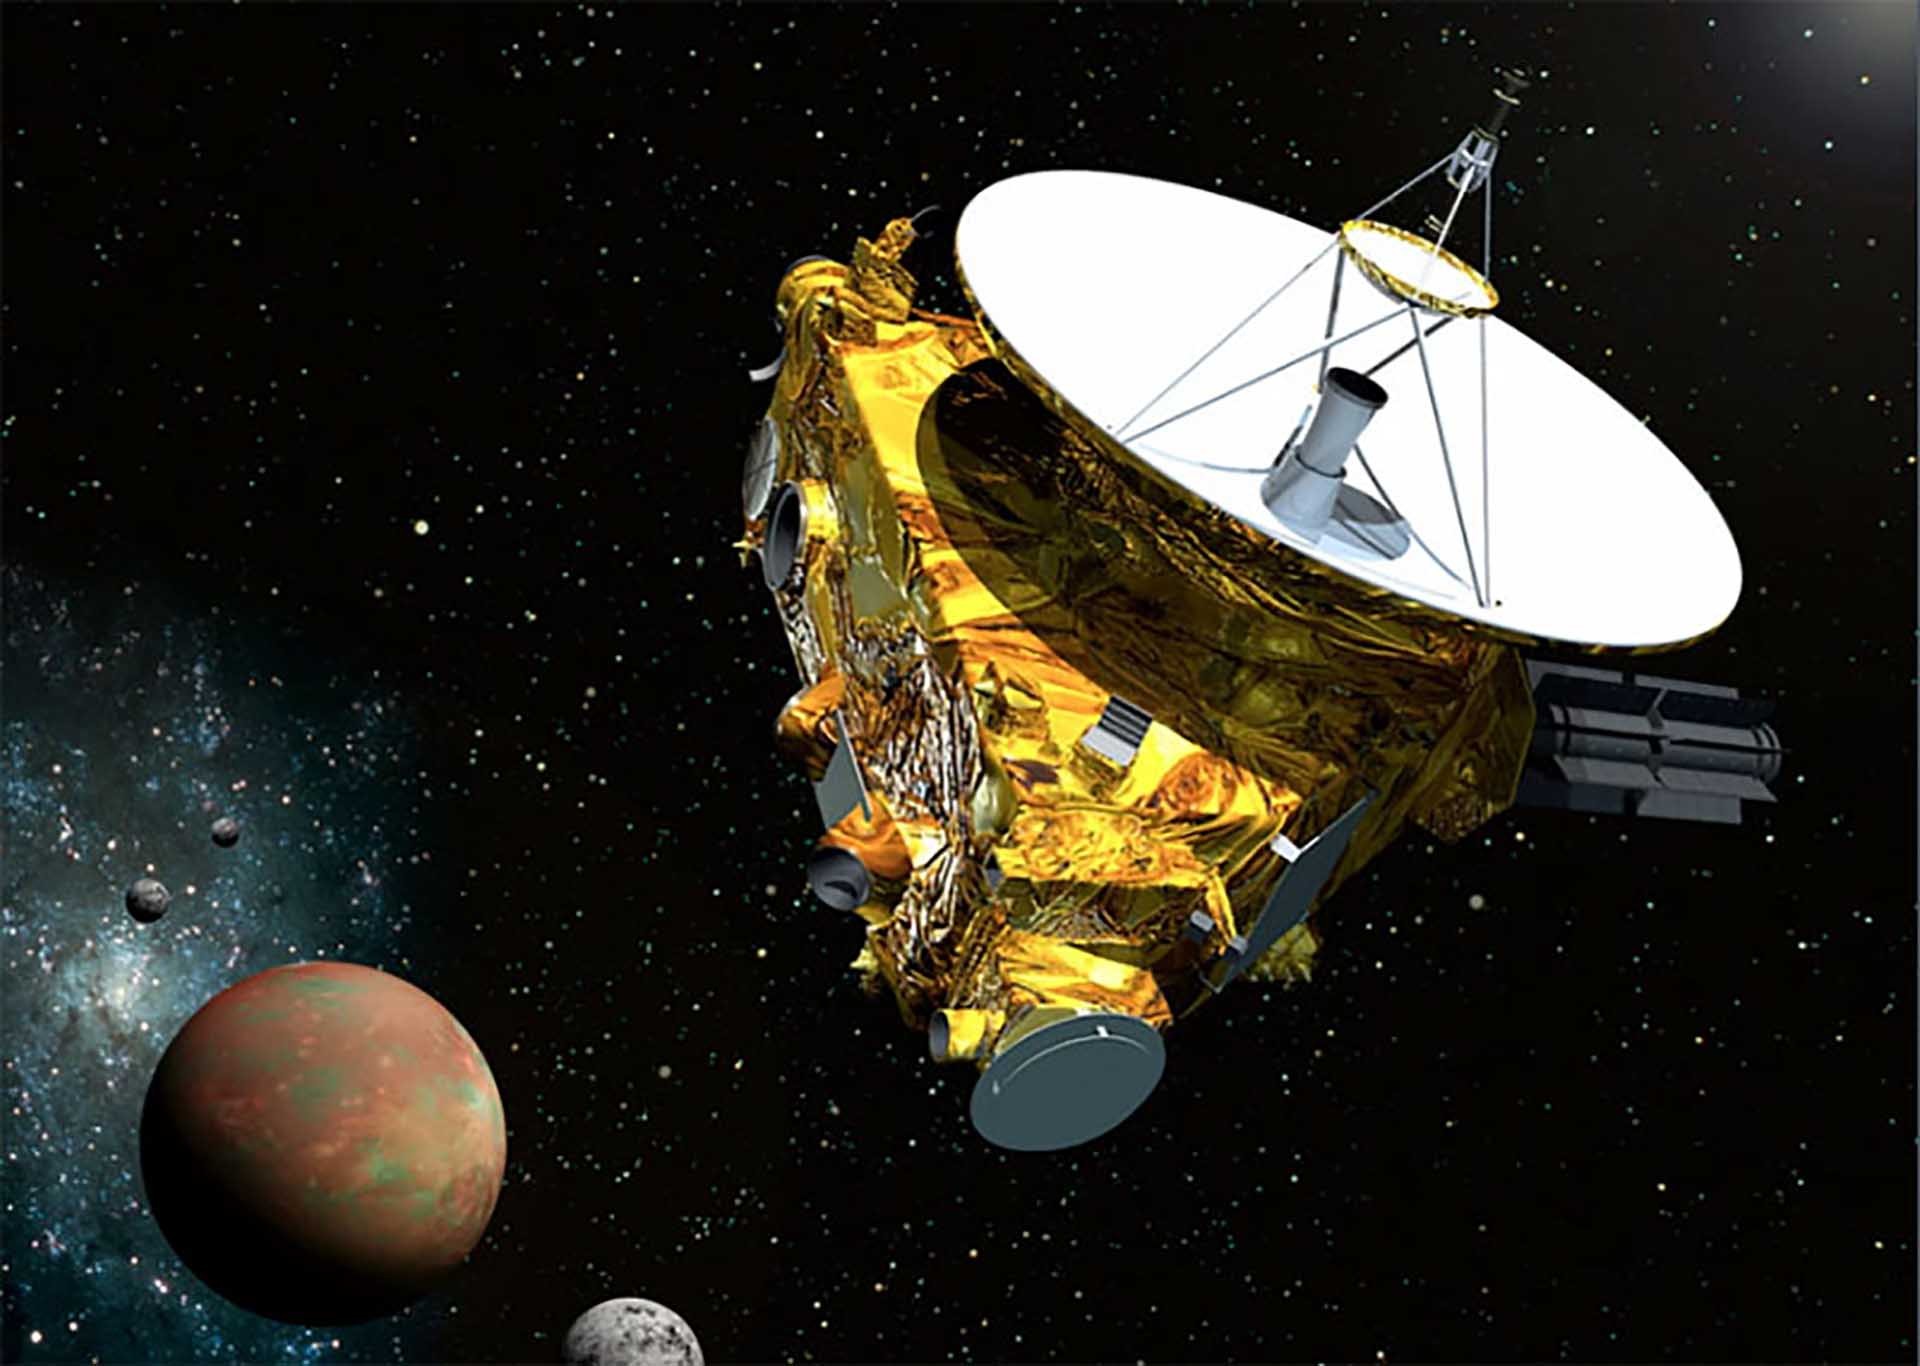 Tàu vũ trụ New Horizons của NASA được phóng lên không gian năm 2006, hiện đang du hành nghiên cứu trong vũ trụ. (Nguồn: NASA) 